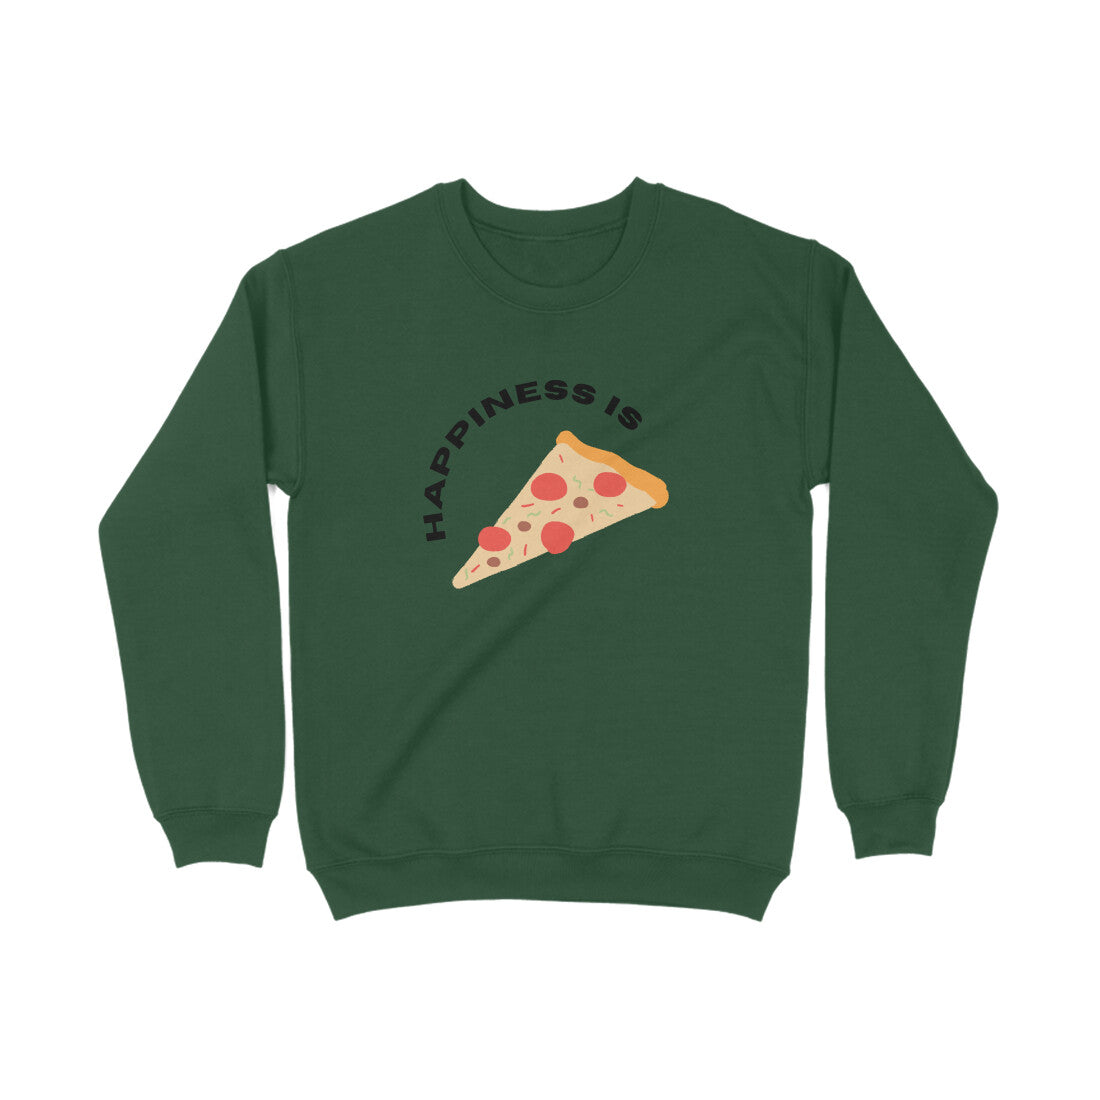 Happiness is Pizza - Unisex Sweatshirt